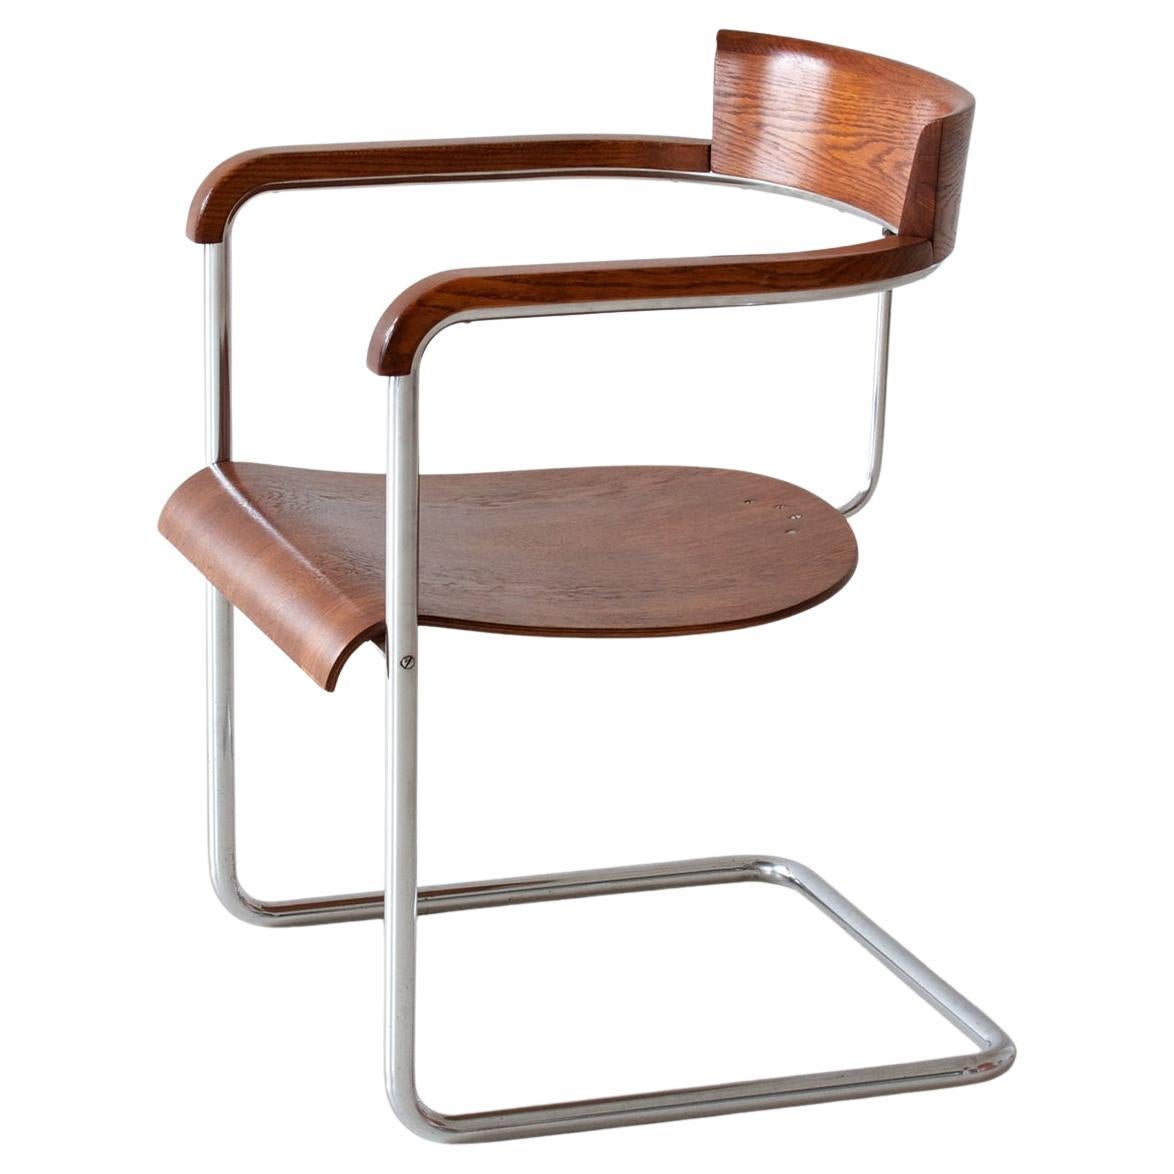 Freischwinger-Sessel der Moderne von Jindrich Halabala, verchromtes Metall, furniertes Holz